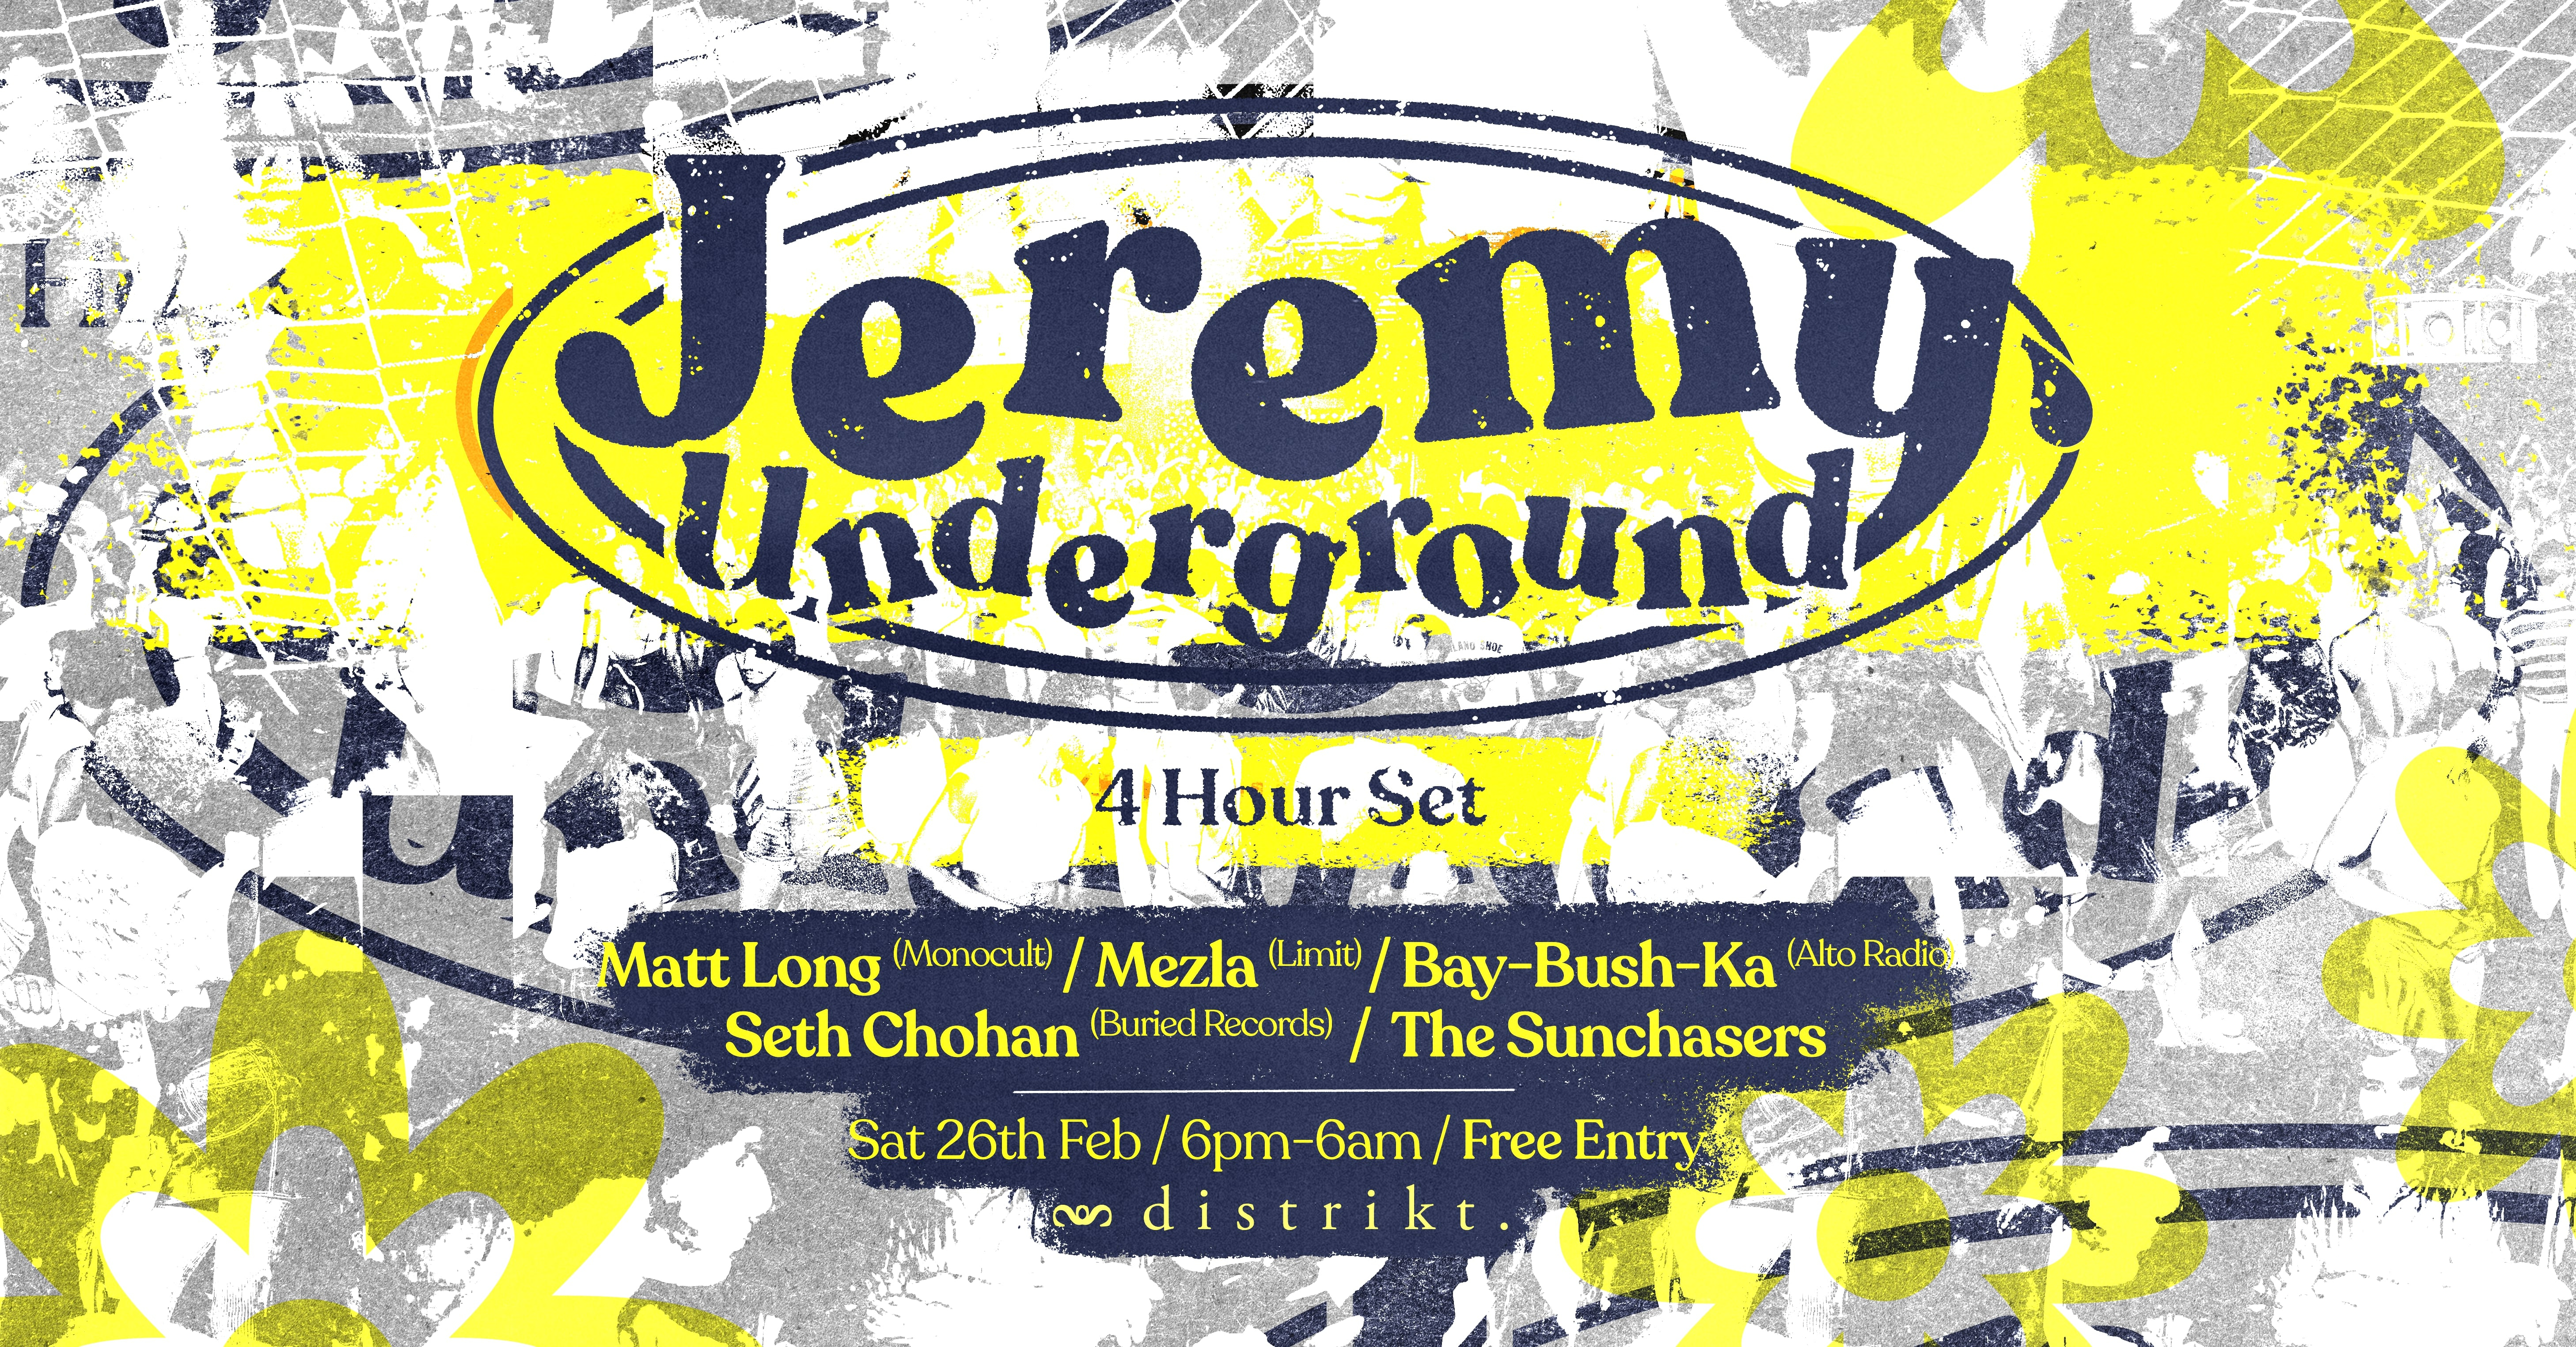 Distrikt presents: Jeremy Underground (4HR Set) - Free Entry - Flyer front